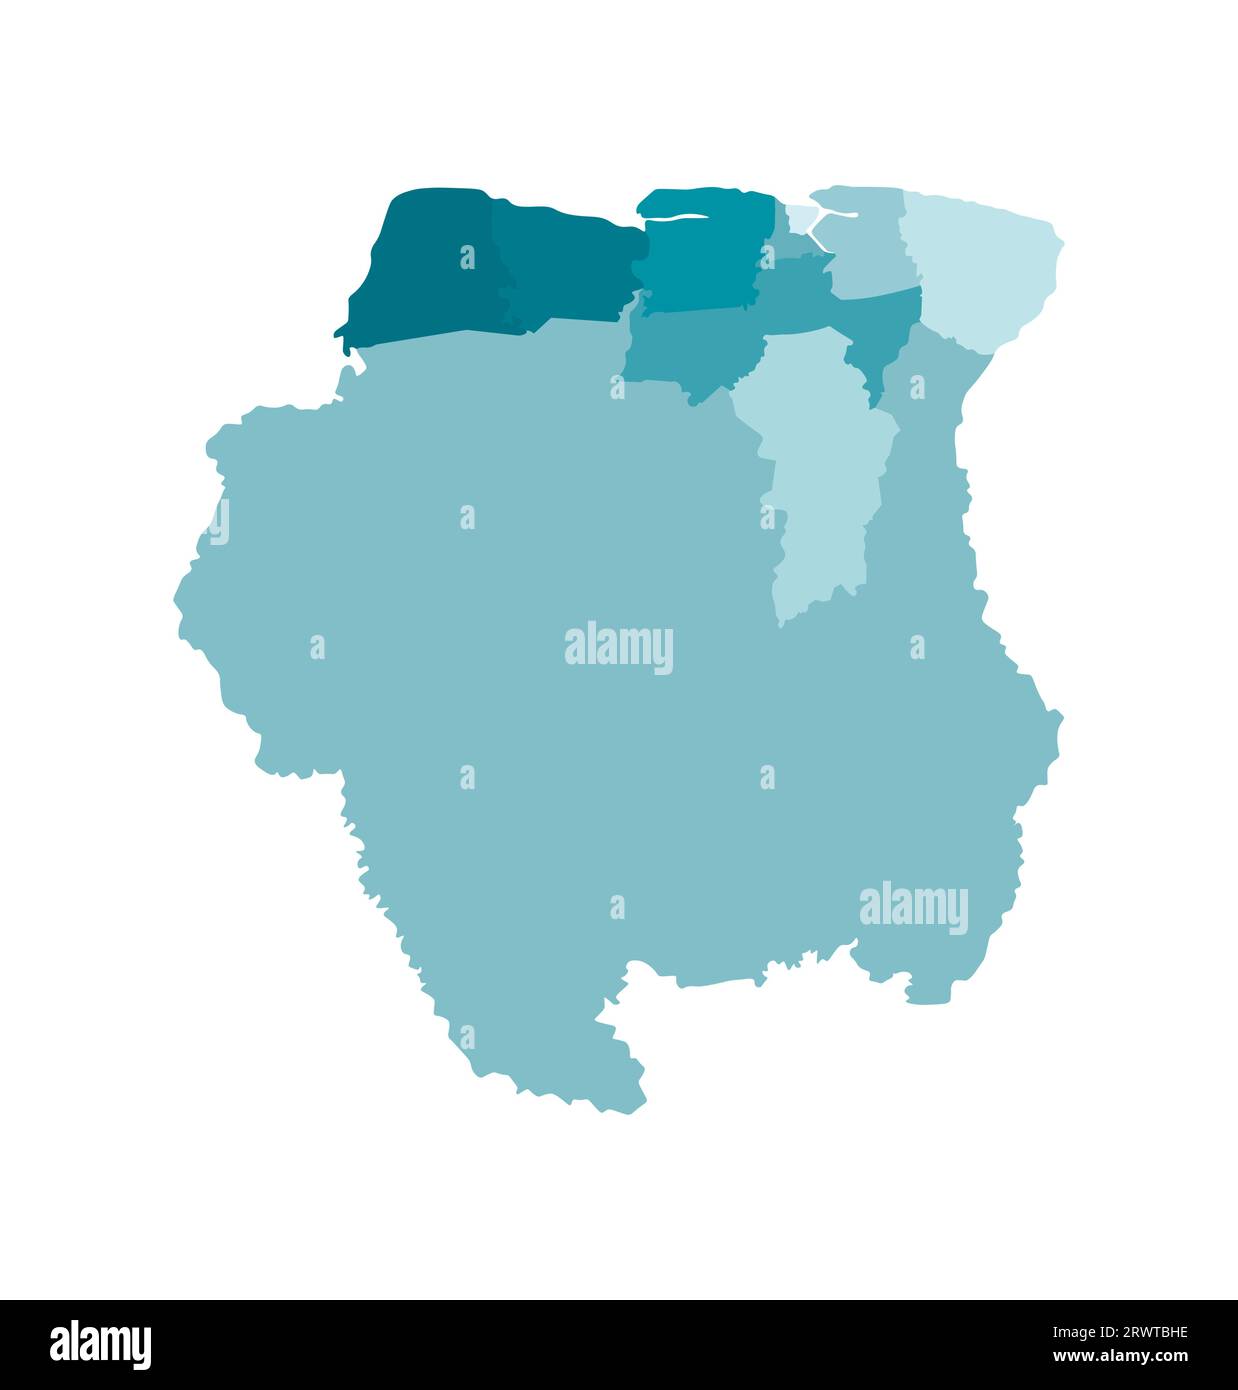 Vektorisolierte Darstellung einer vereinfachten Verwaltungskarte von Suriname. Grenzen der Bezirke (Regionen). Farbenfrohe, khakifarbene Silhouetten. Stock Vektor